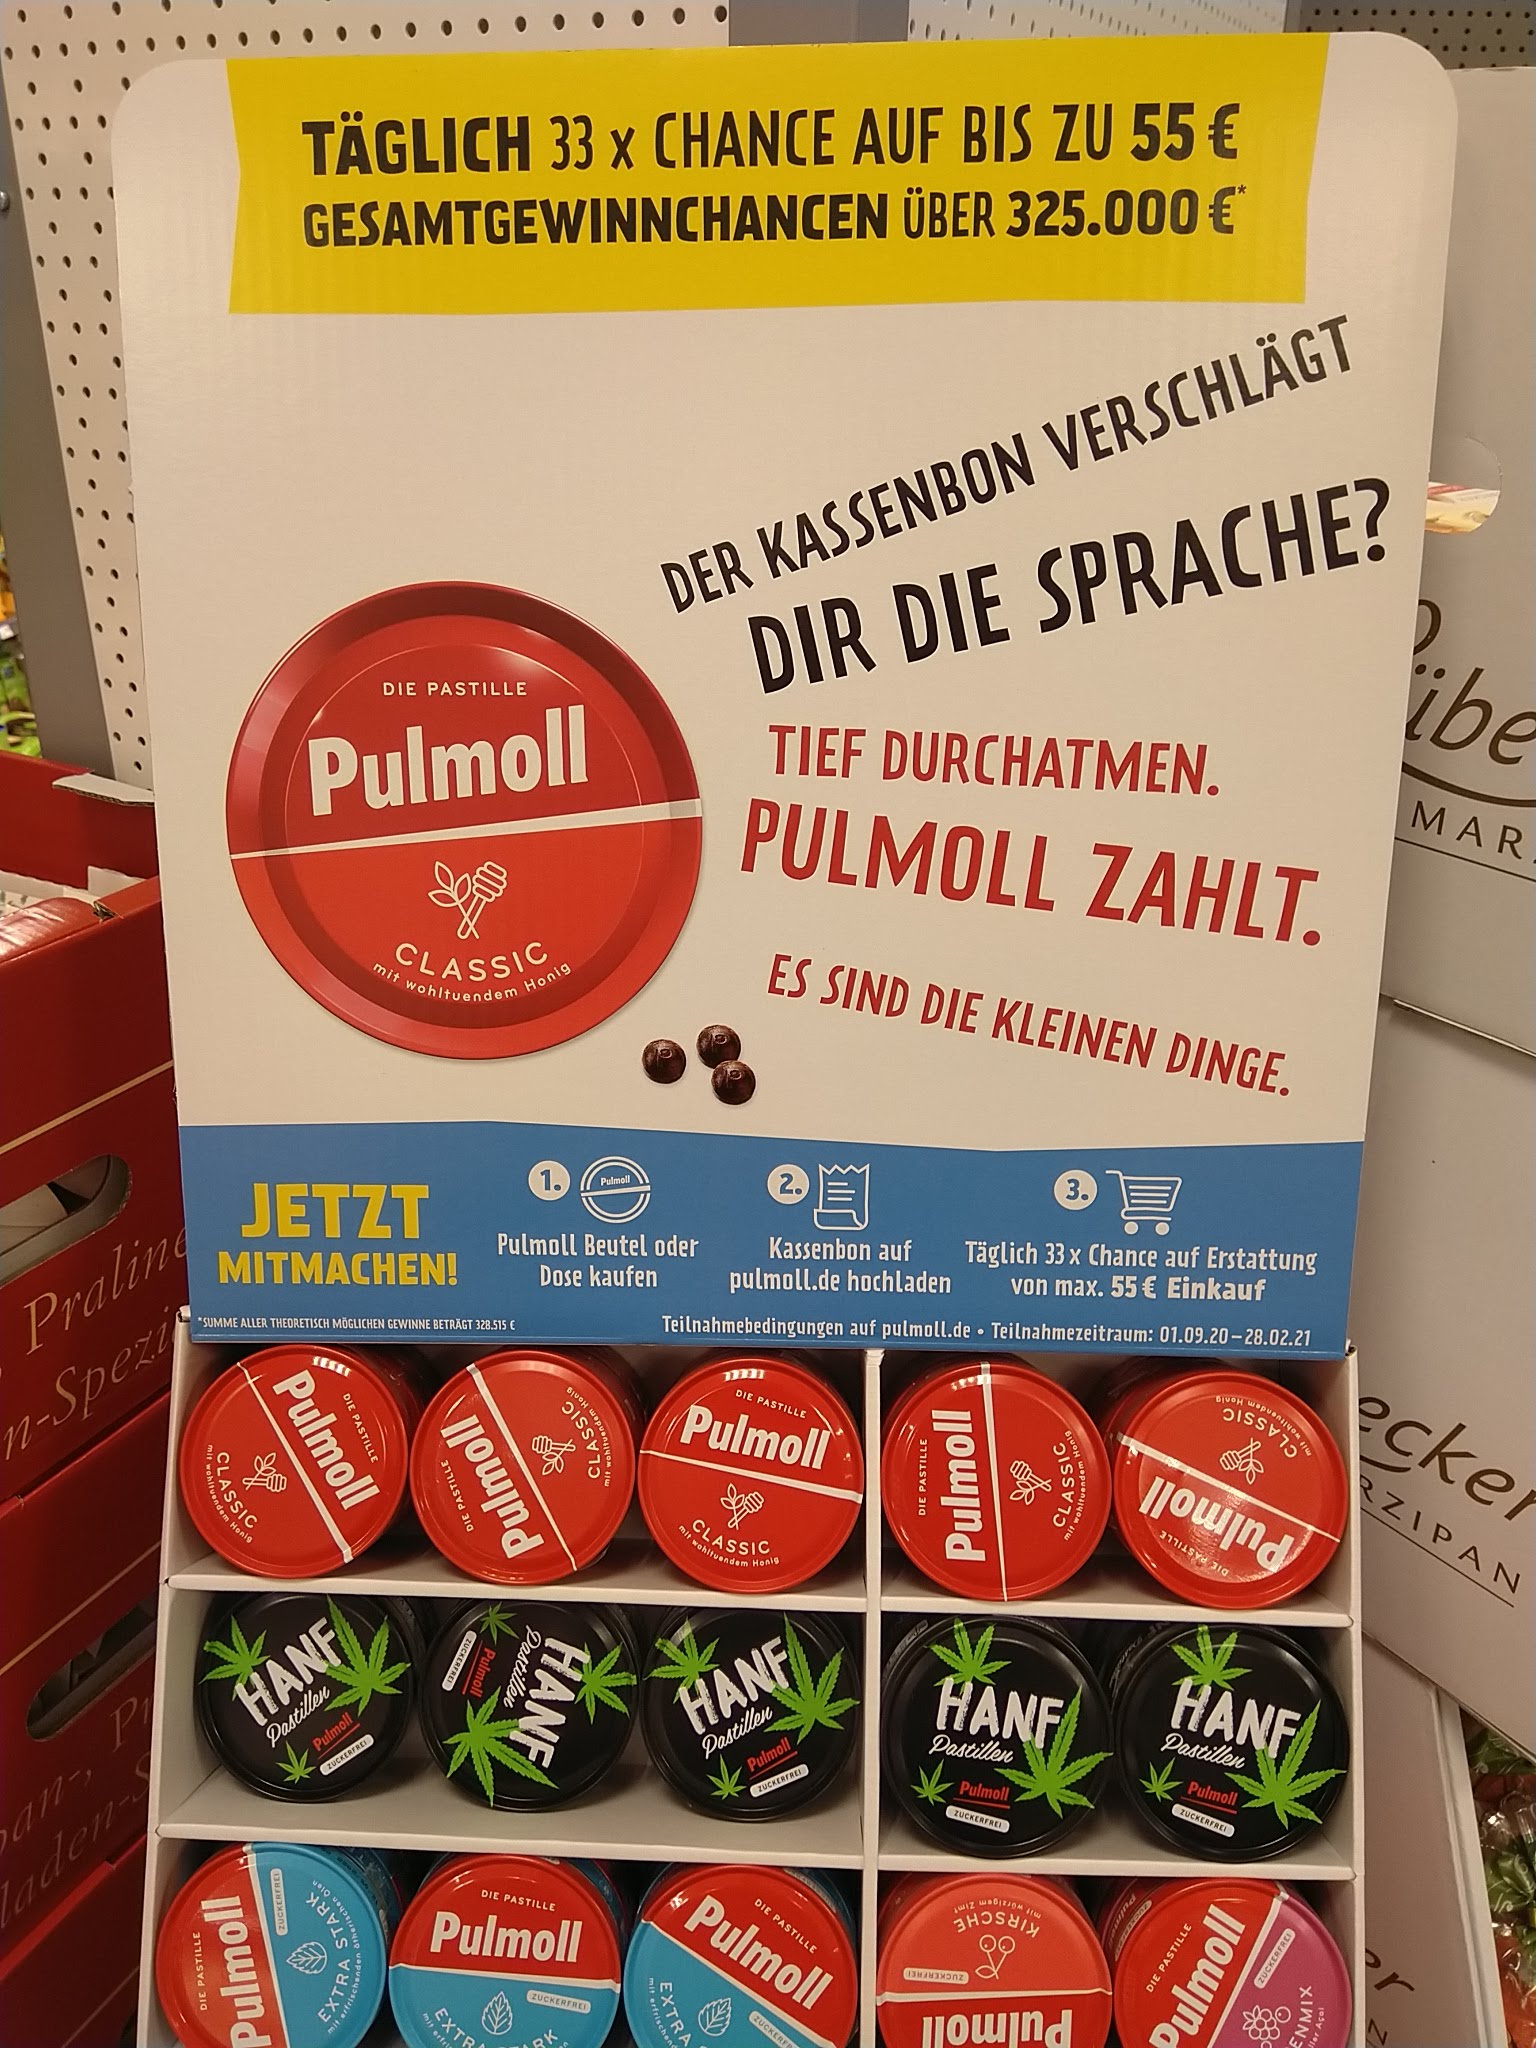 Pulmoll erstattet Einkauf - täglich 33x Kassenbon-Erstattung bis 55 Euro gewinnen